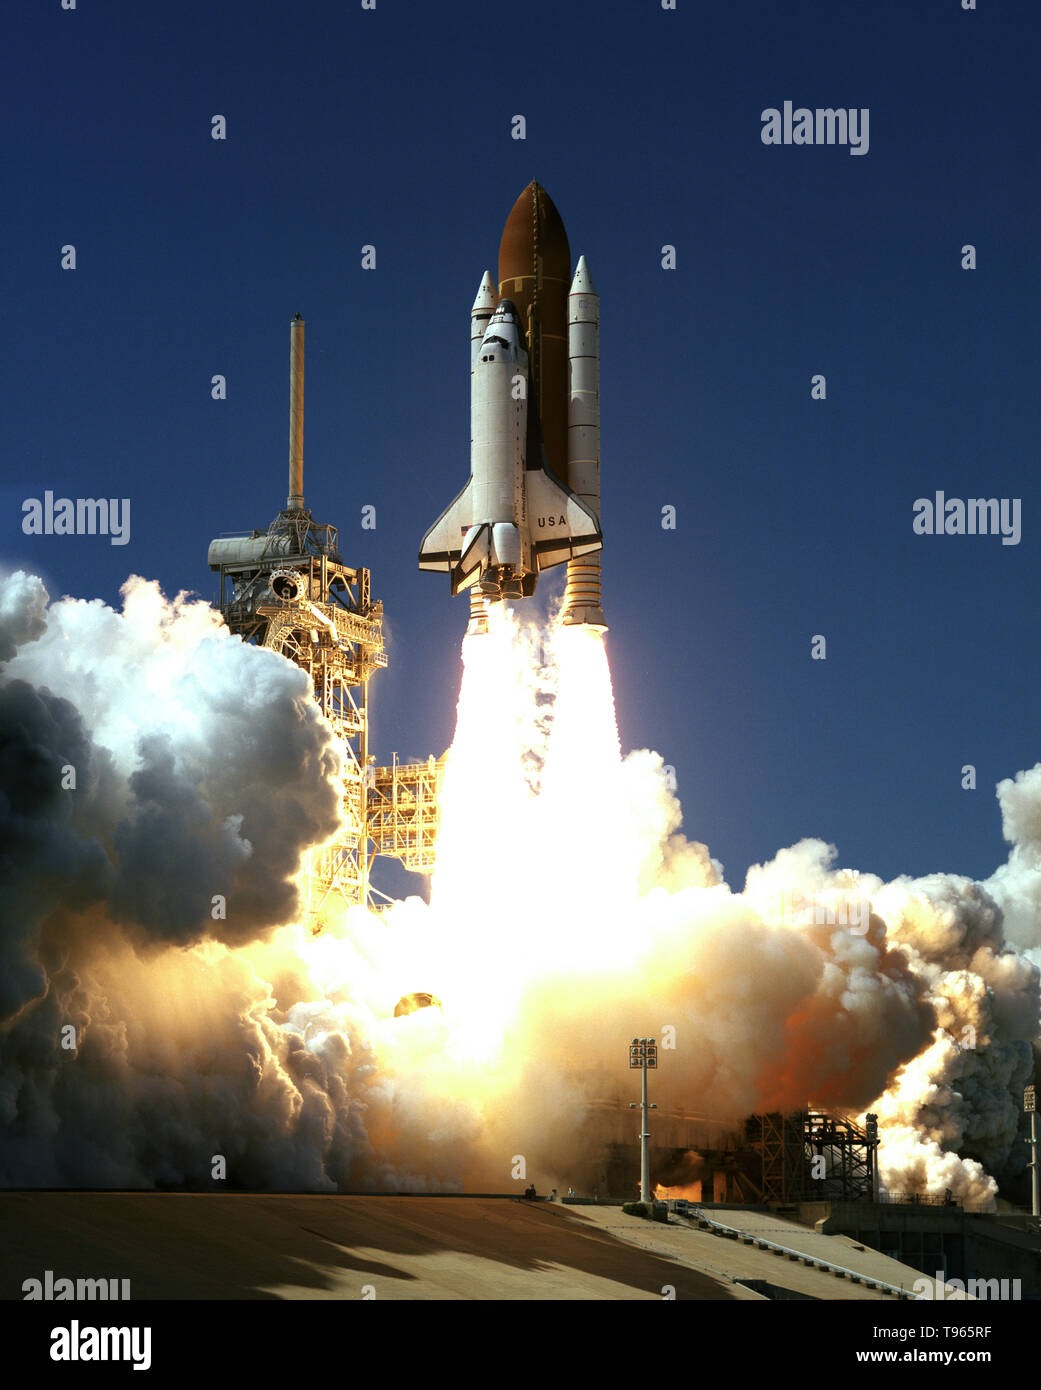 ST-83 missione è stata inizialmente lanciata il 4 aprile 1997, ed era destinato a essere in orbita per quindici giorni, 16 ore. La missione è stata interrotta a causa di un problema con la cella a combustibile #2 ed è atterrato su 8 aprile dopo 3 giorni 23 ore. La NASA ha deciso di volare di nuovo la missione come STS-94, che ha lanciato il 1 luglio 1997. Il payload primario su STS-83 era il Microgravity Science Laboratory (MSL). MSL è stato una raccolta di esperimenti di microgravità alloggiato all'interno di una unione Spacelab modulo lungo (LM). Foto Stock